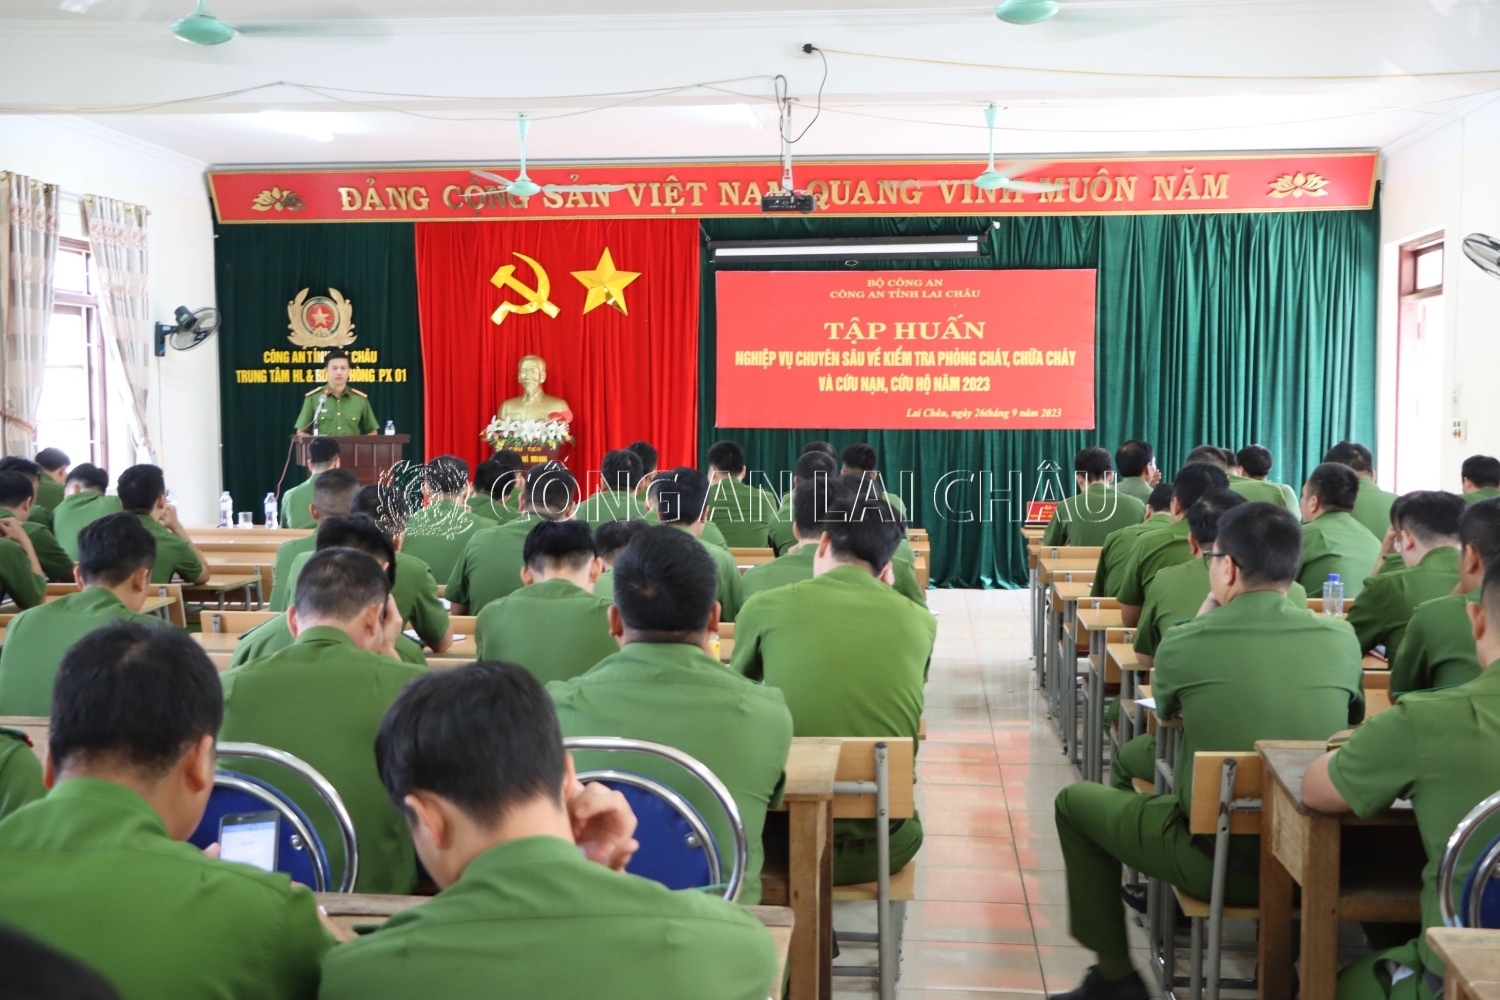 Thiếu tá Vũ Văn Hùng - Trưởng phòng Cảnh sát phòng cháy chữa cháy và cứu nạn cứu hộ phát biểu khai mạc lớp tập huấn